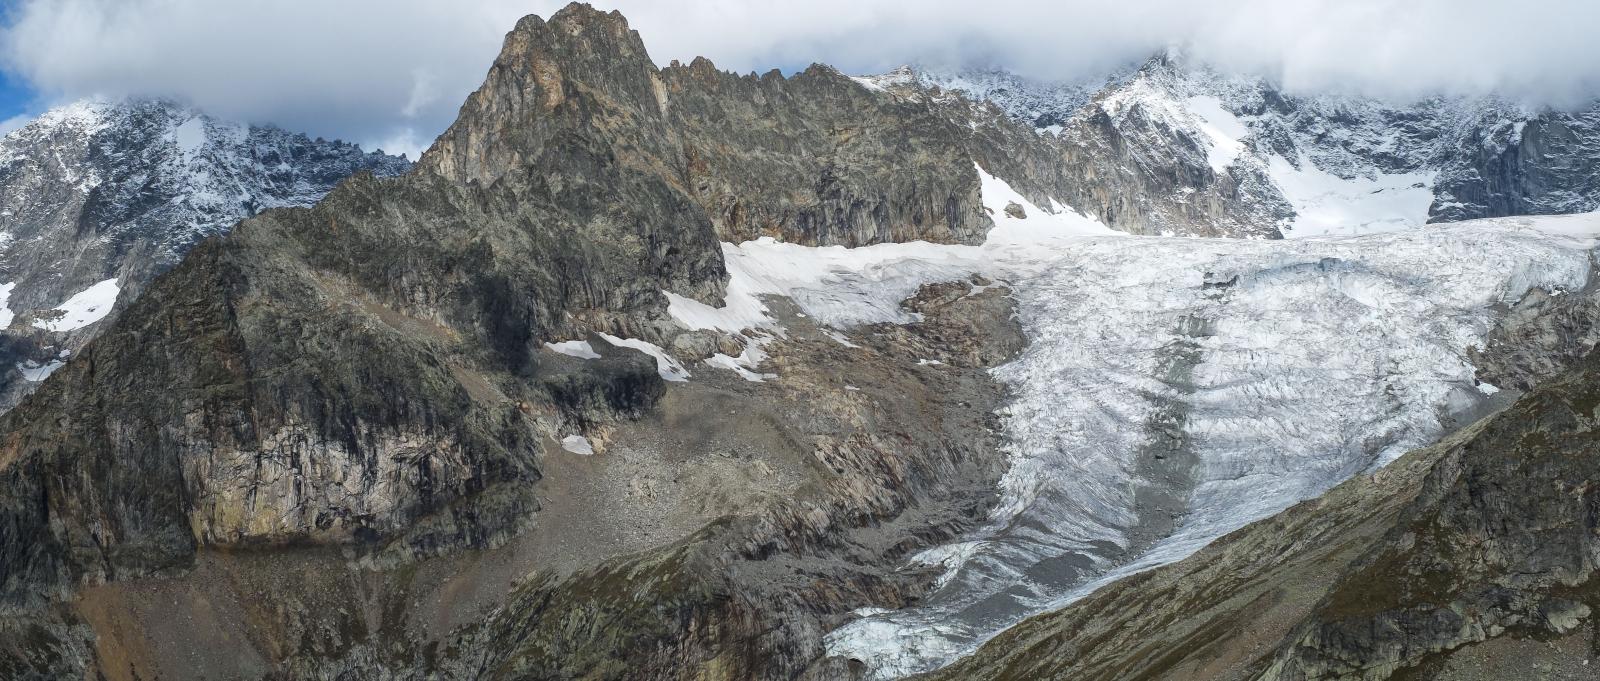 Glacier on the Tour du Mont Blanc